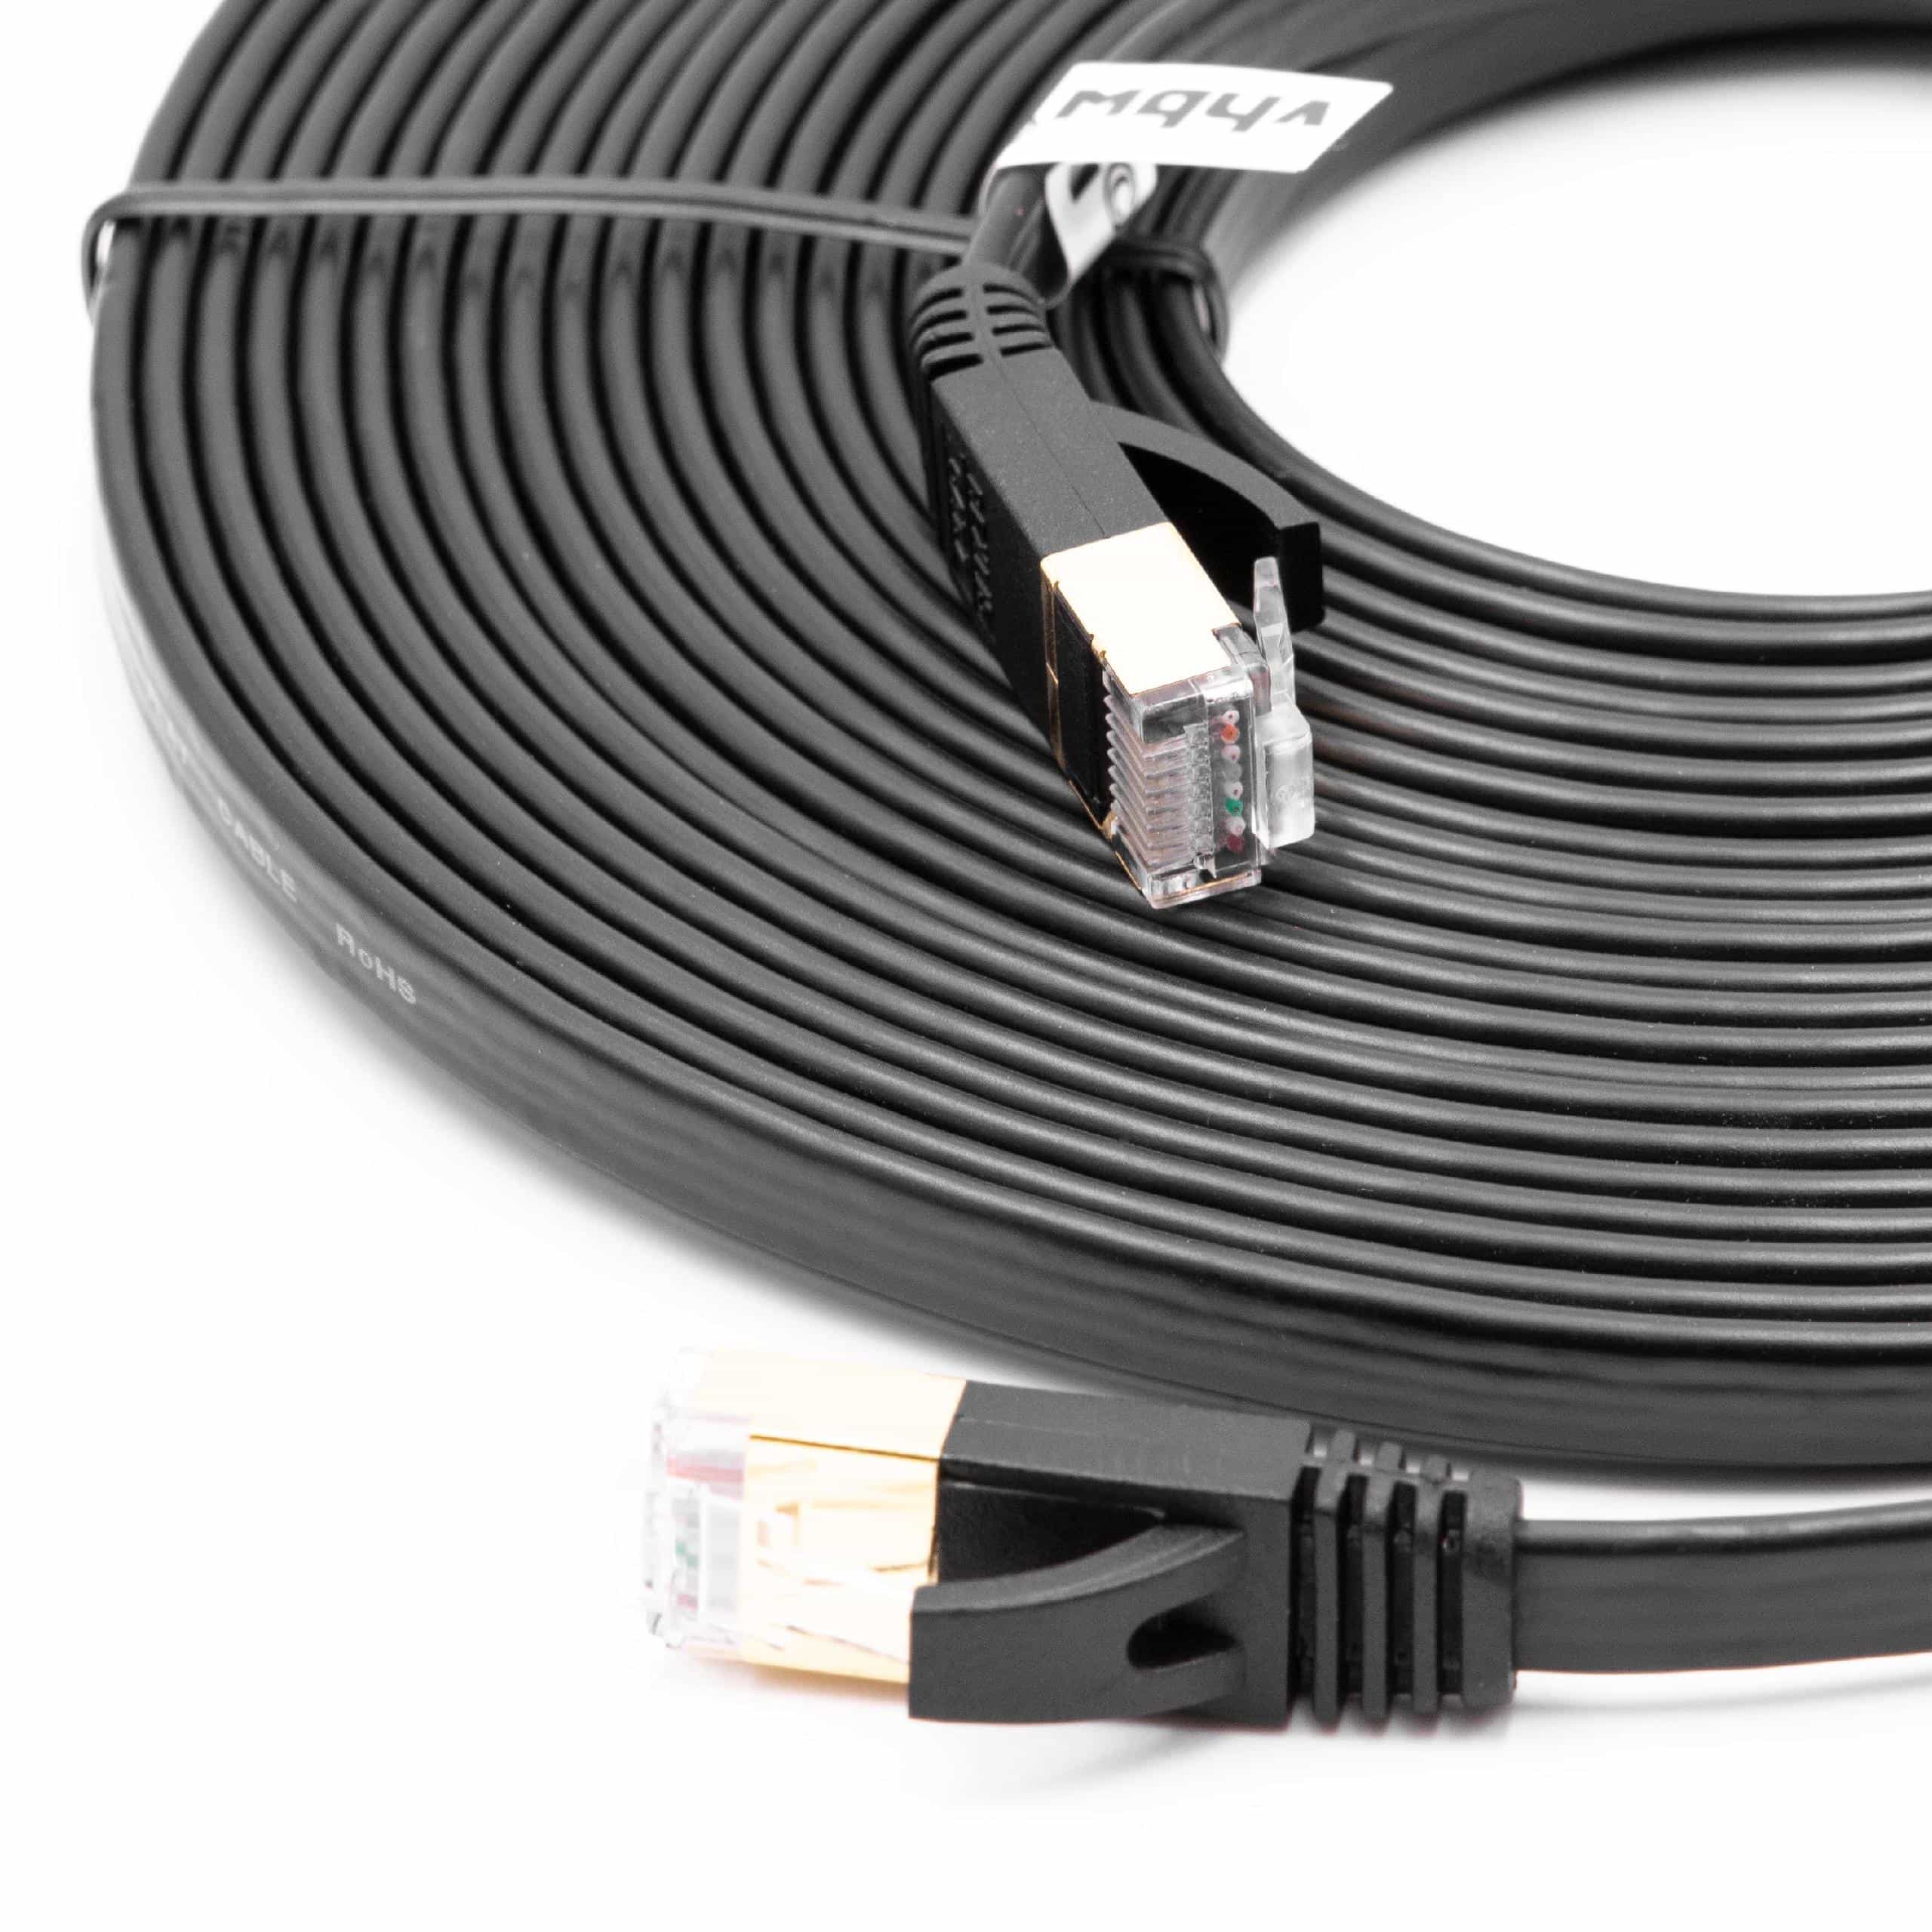 Câble de réseau câble LAN Cat7 8m noir câble plat